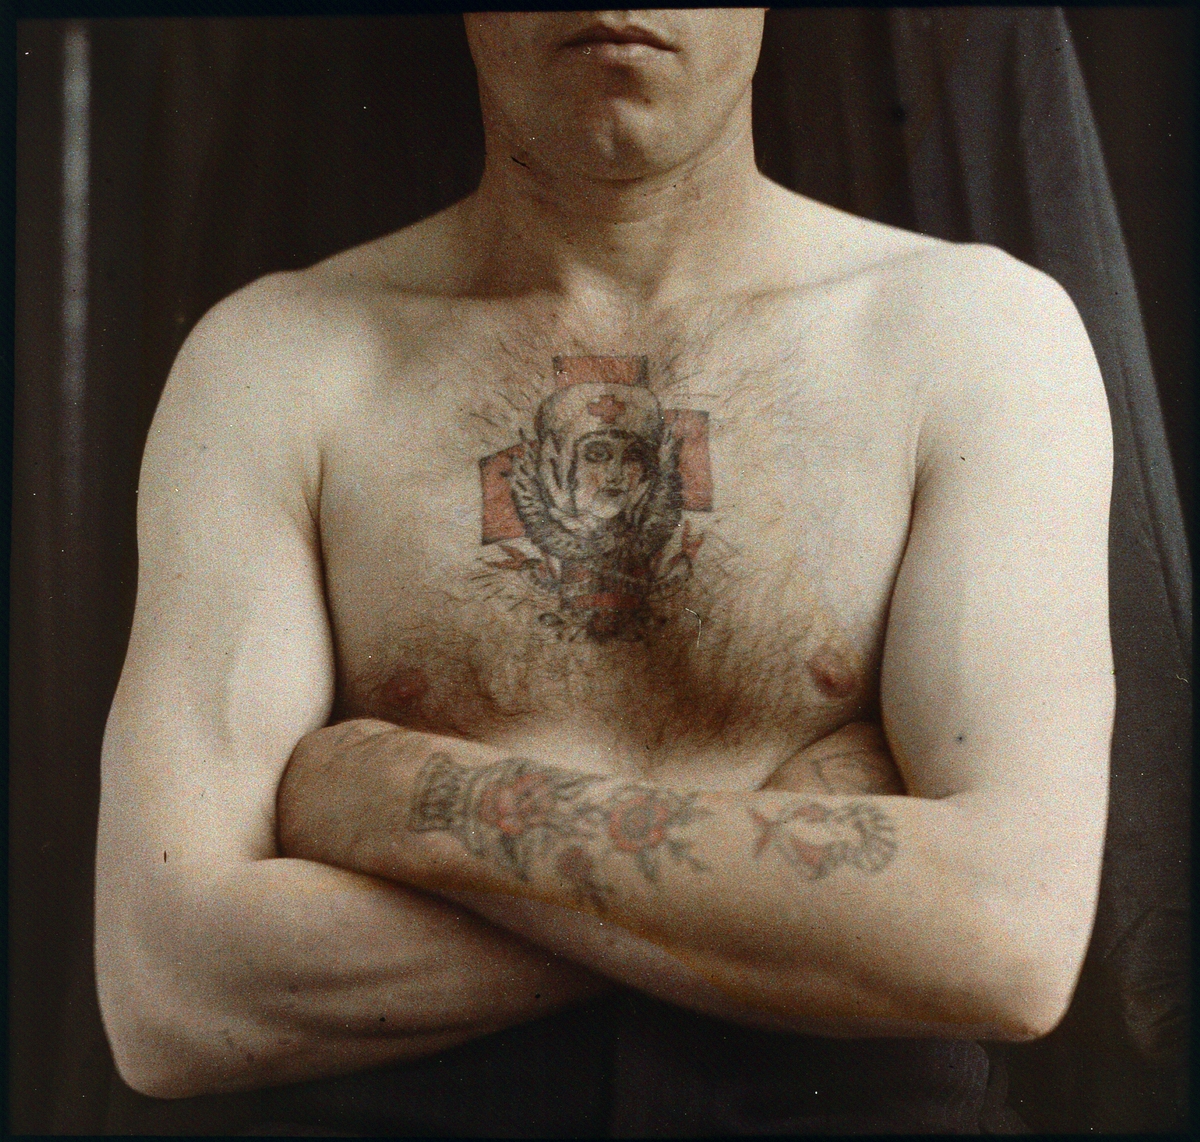 Agfa-autokrom. Medicinska fotografier.
Tatuering på arm och bröst.